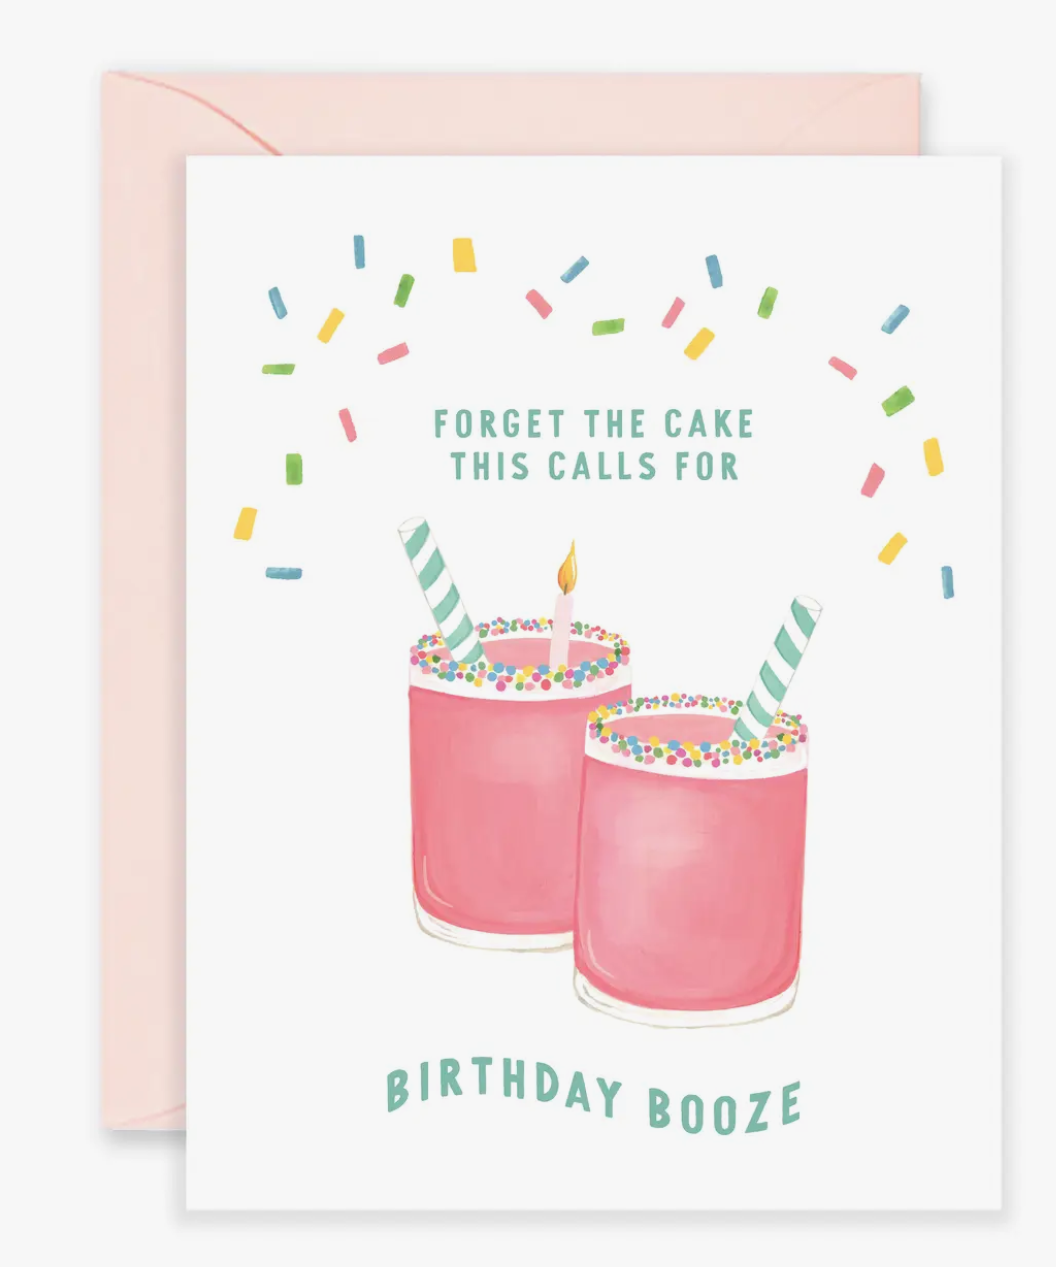 Birthday Booze Card